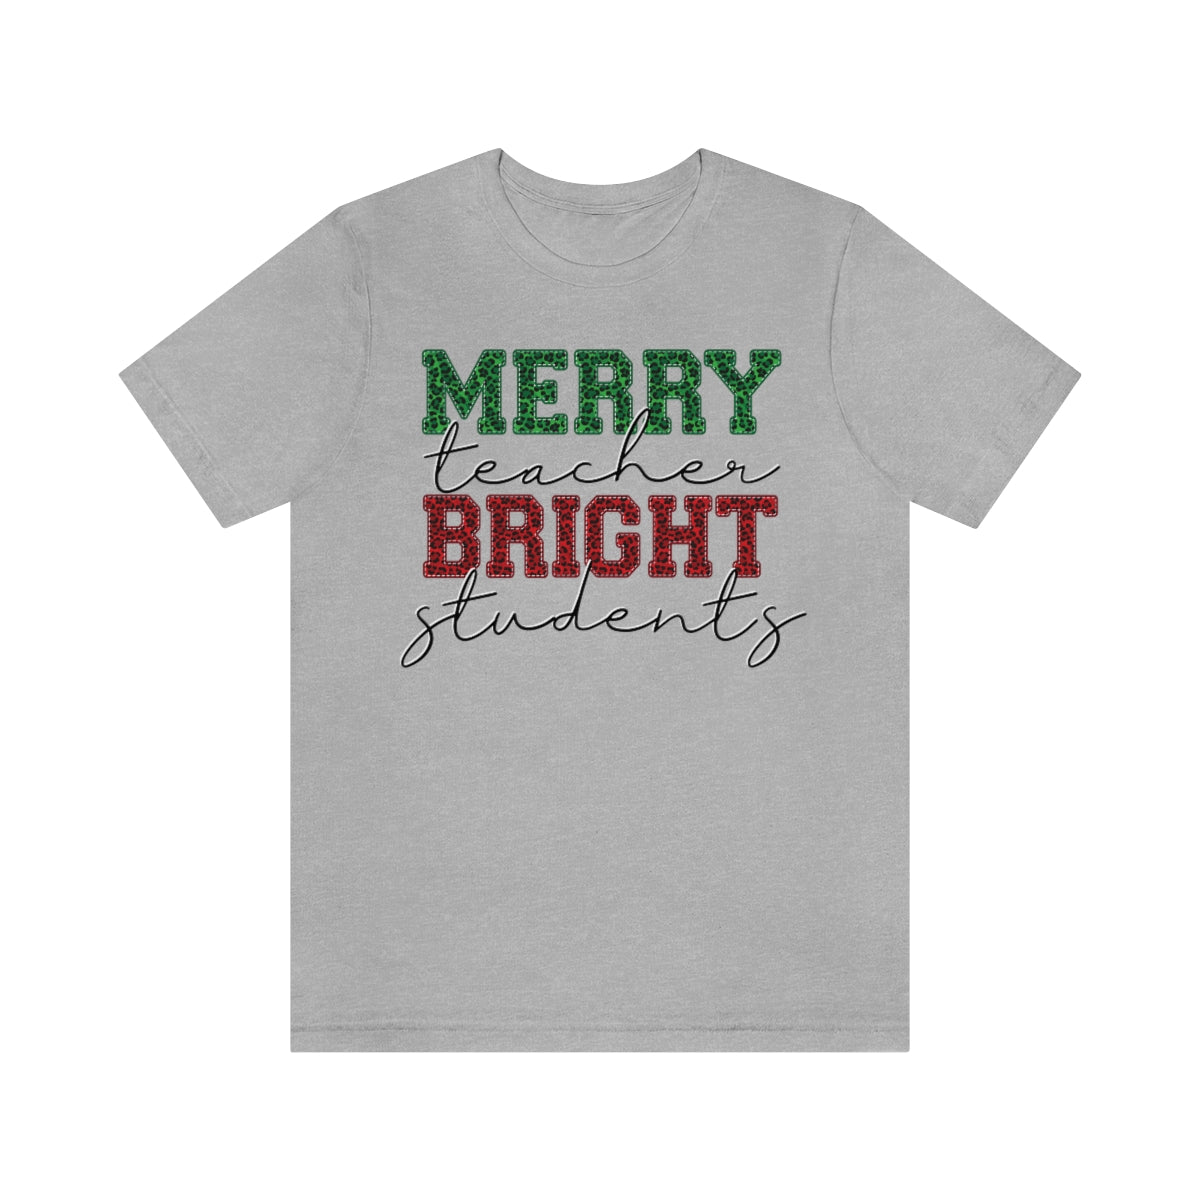 Merry Teacher Bright Students Teacher Shirt